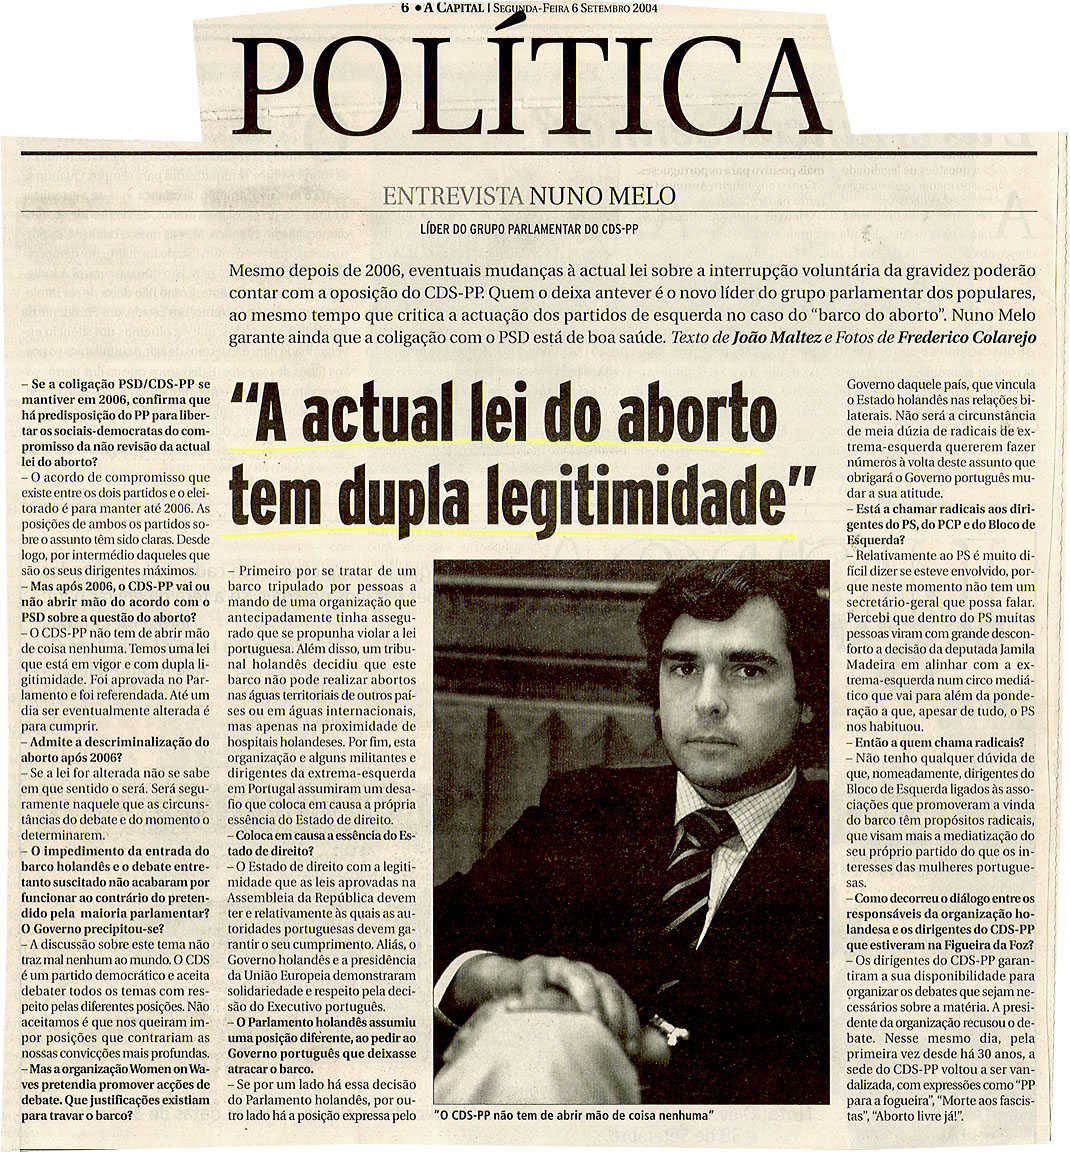 "A actual lei do aborto tem dupla legitimidada"